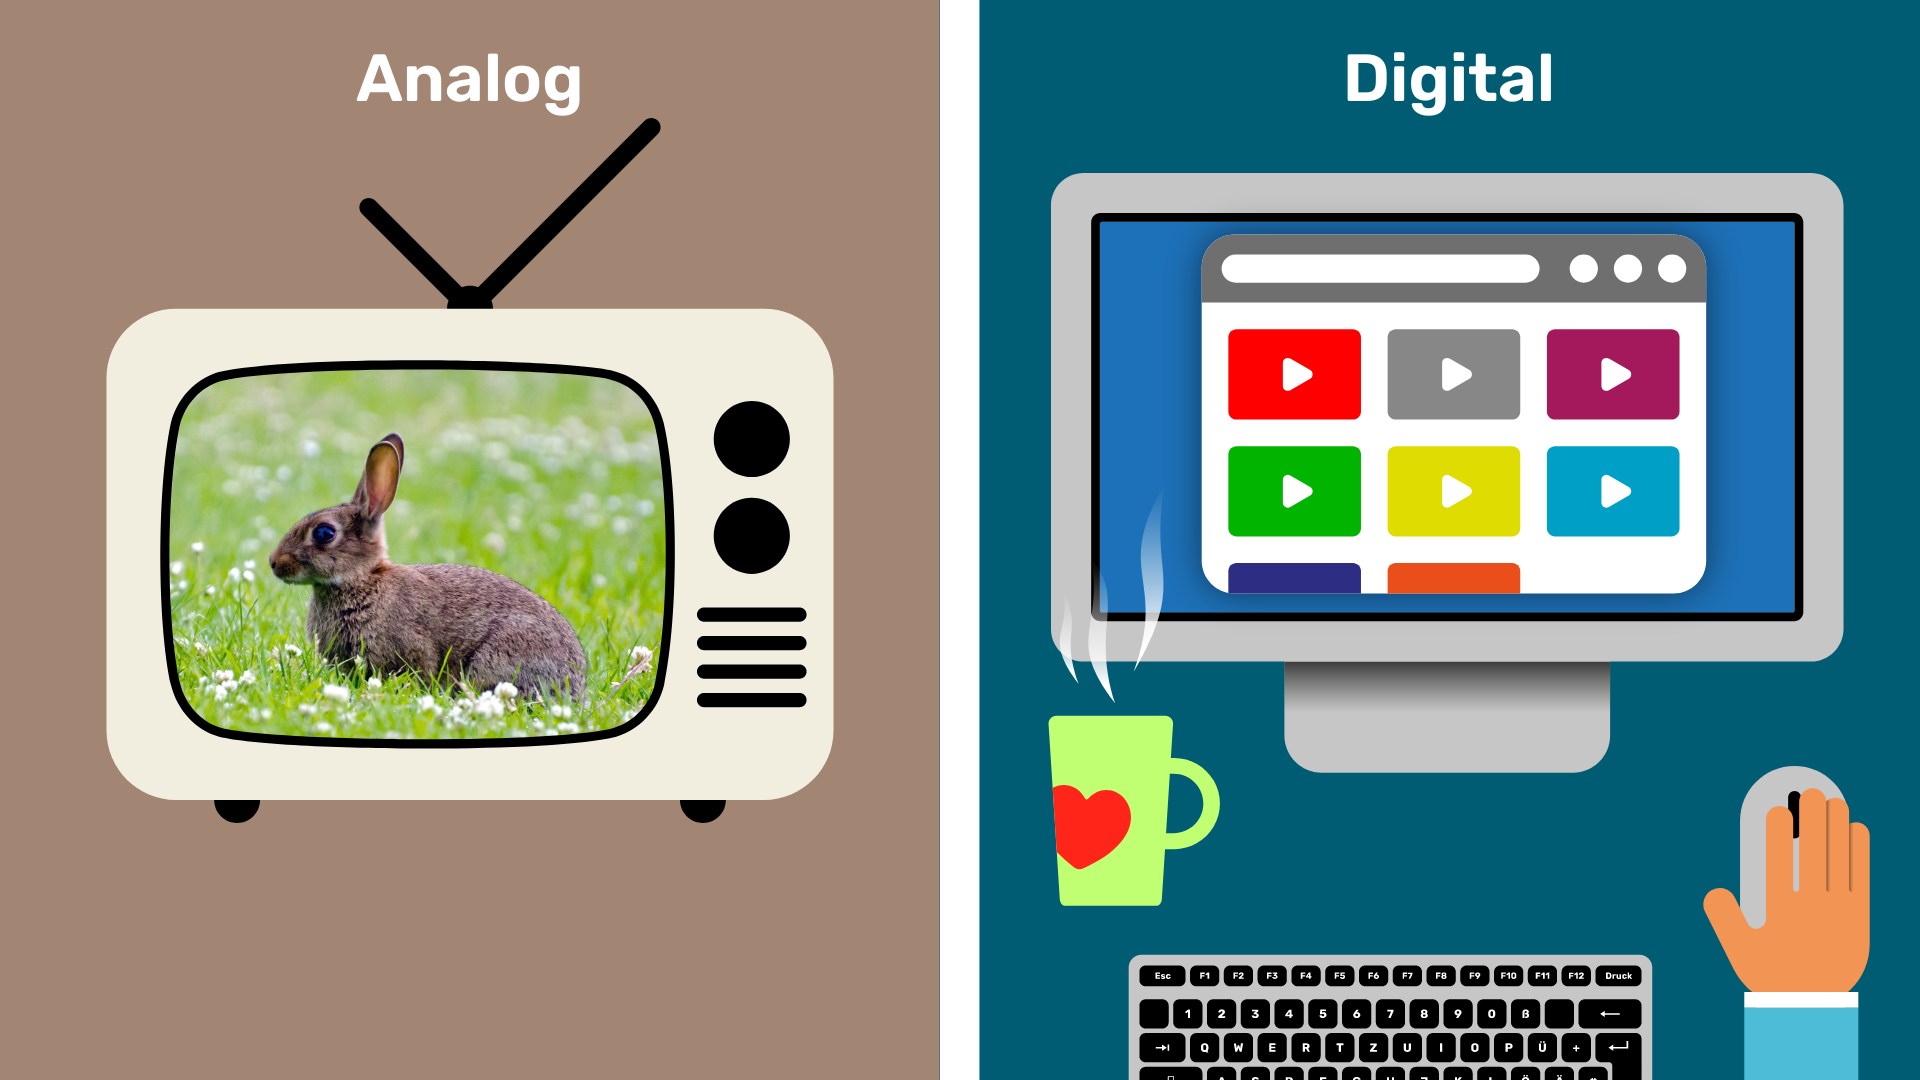 Auf der linken Seite des Bildes ist ein altes Fernsehgerät. Auf dem Bildschirm ist ein Kaninchen auf einer Wiese zu sehen. Auf der rechten Seite ist ein Computer, eine Kaffeetasse, eine Tastatur und eine Hand auf einer Computermaus zu sehen. Auf dem Bildschirm sind kleine, bunte Videofenster zu sehen.